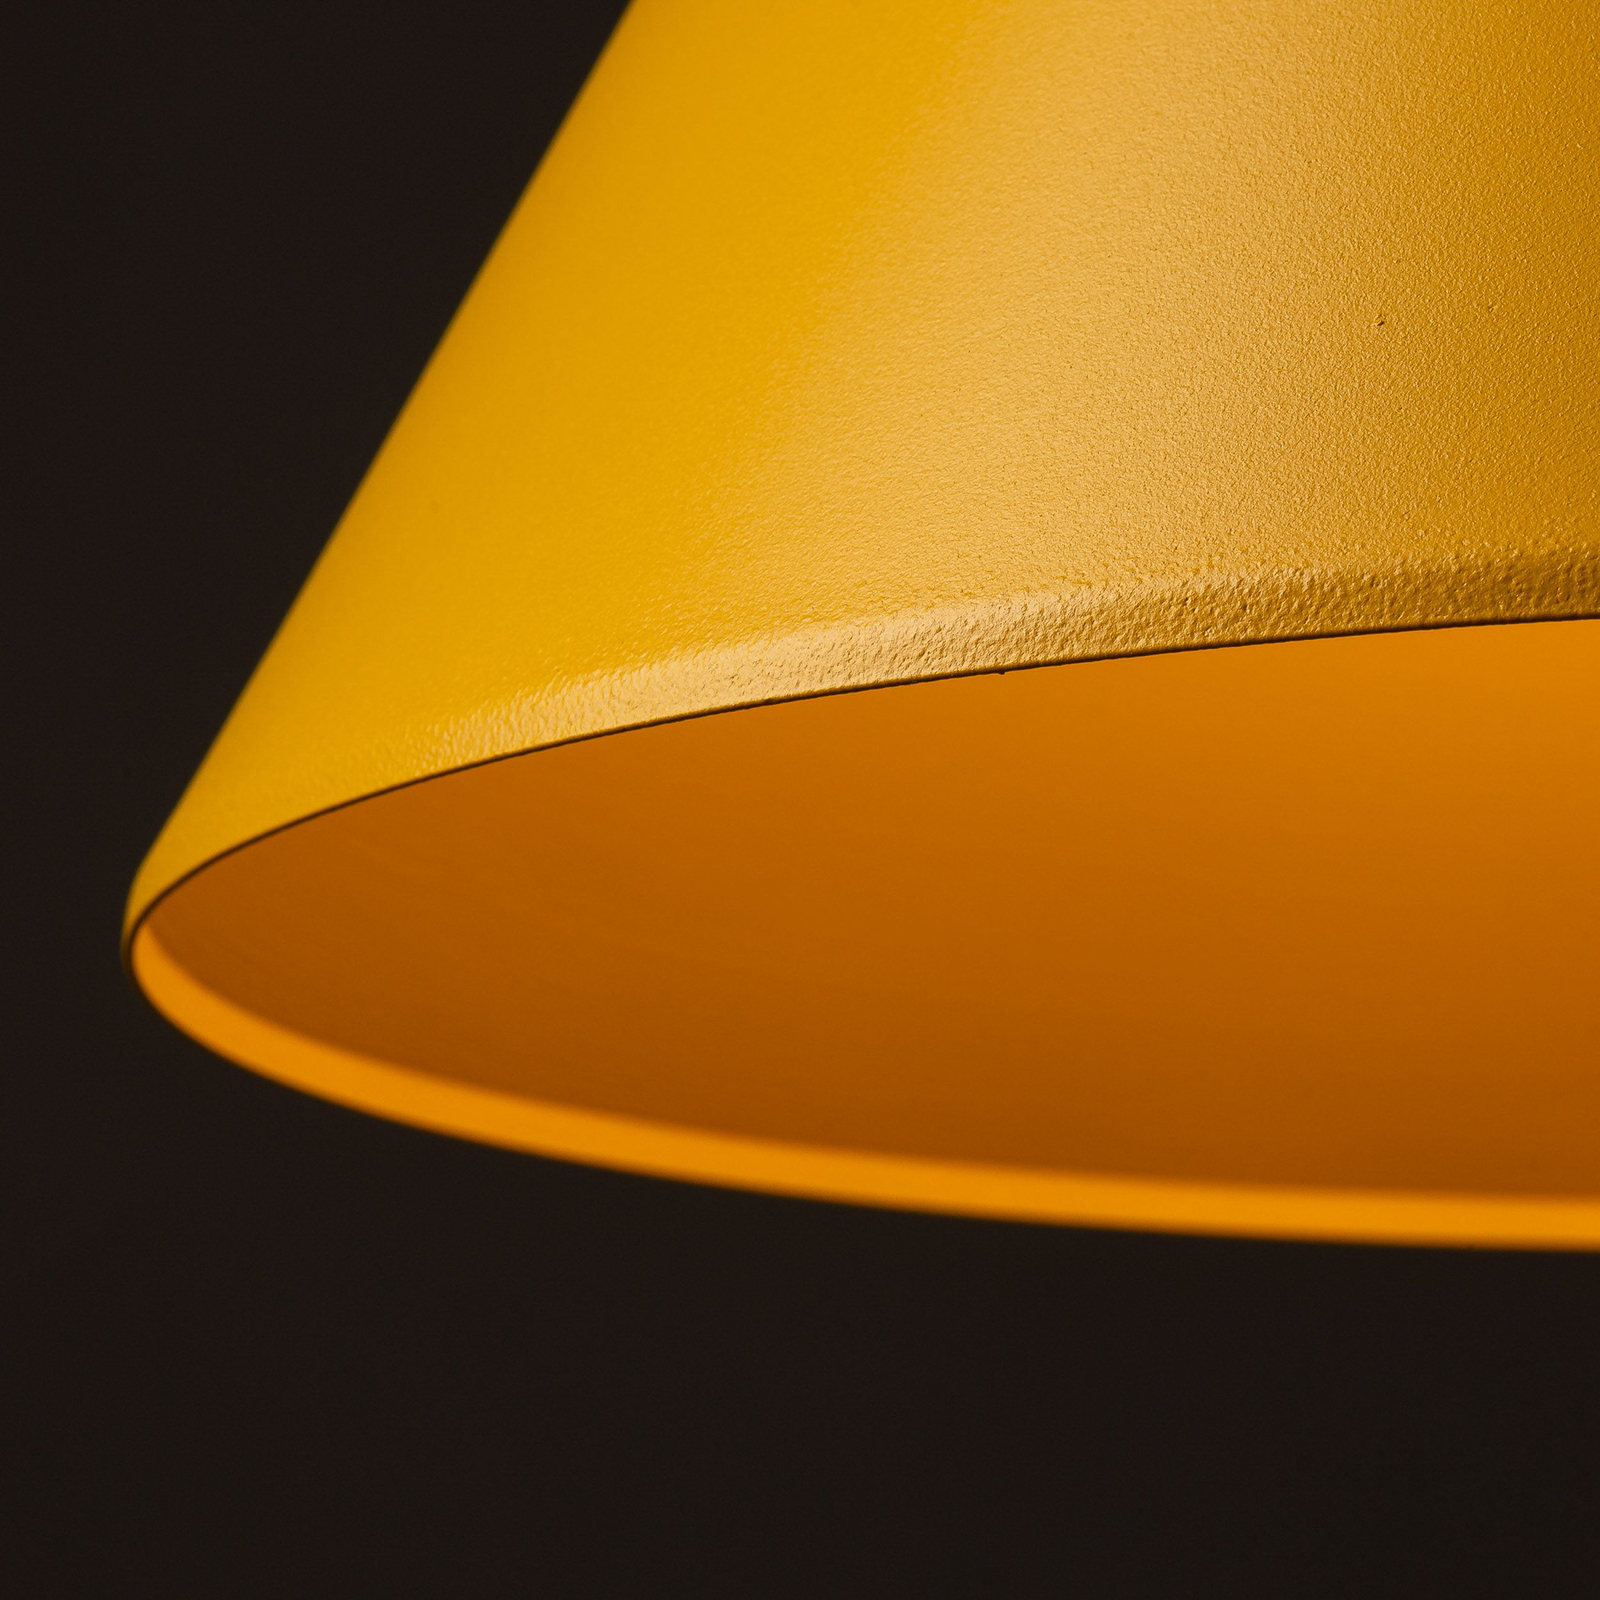 Lampa wisząca Cono, 1-punktowa, Ø 32 cm, żółta